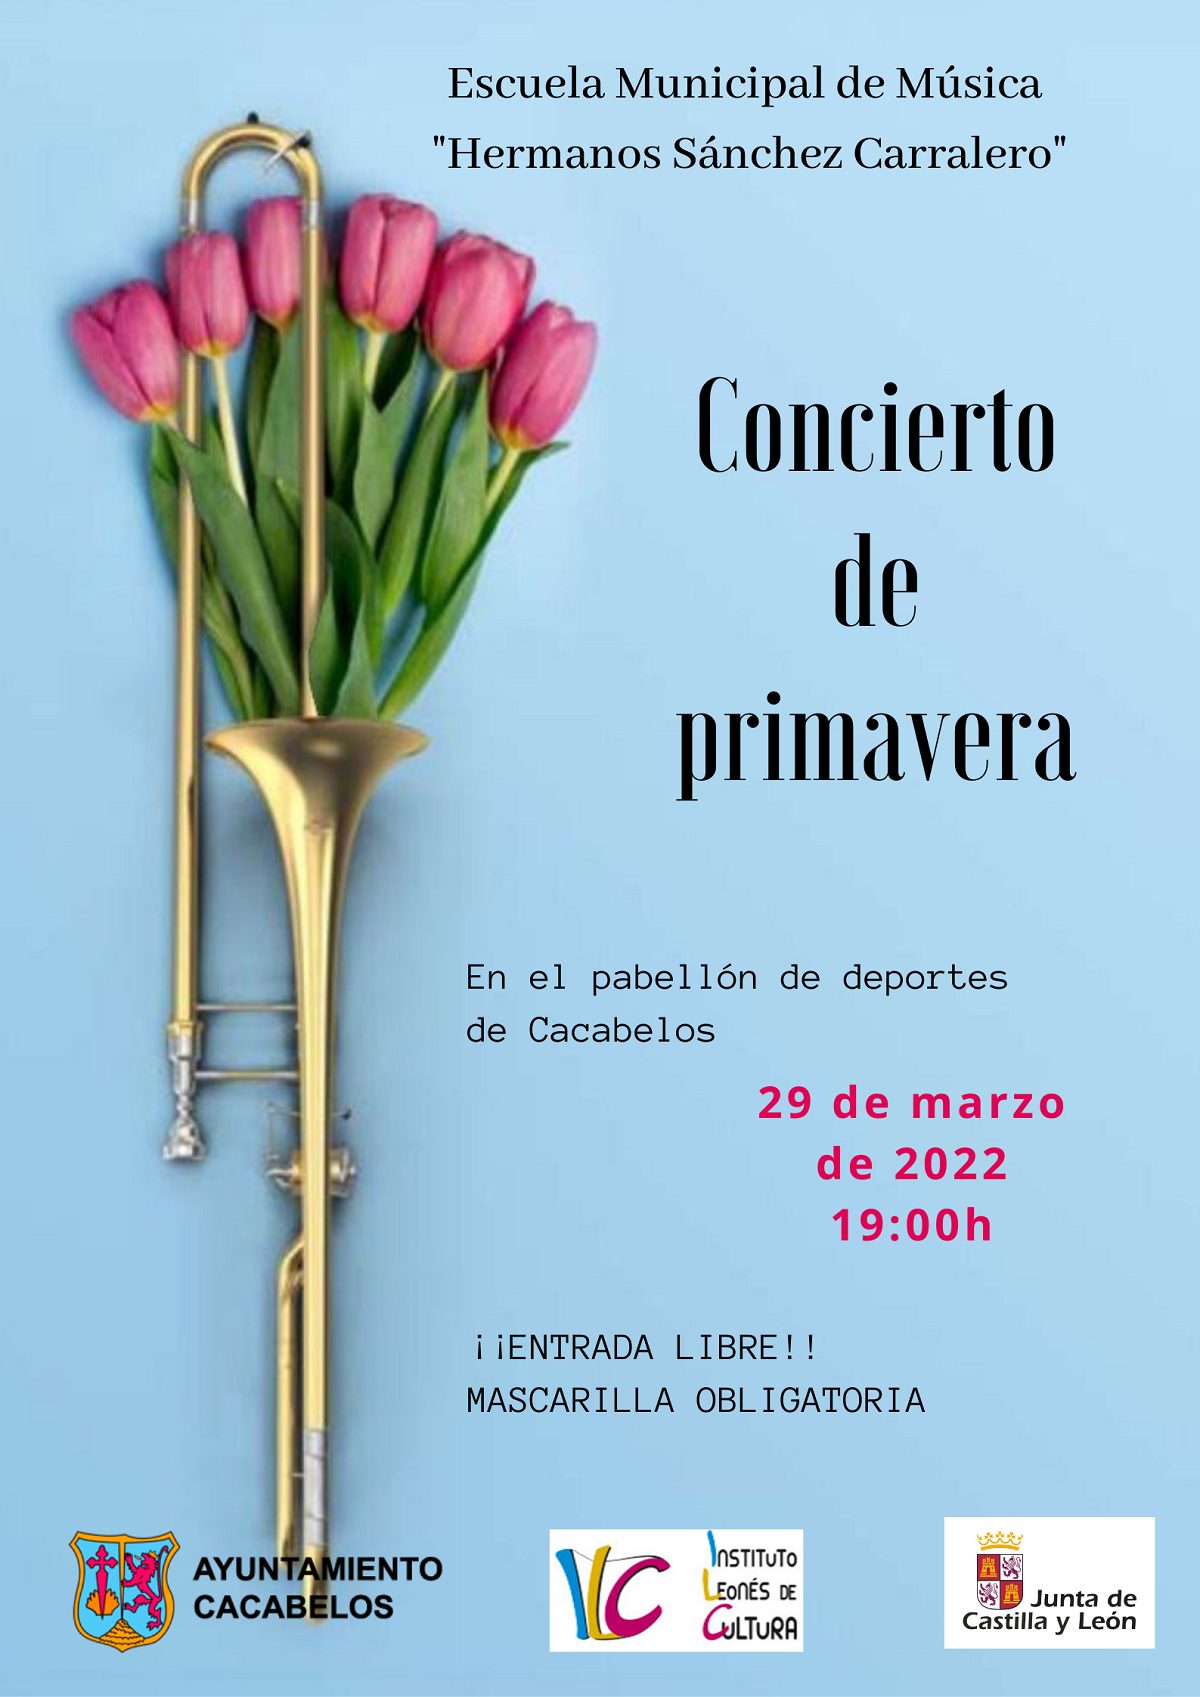 La Escuela de música "Sánchez Carralero" de Cacabelos organiza un Concierto de Primavera 2